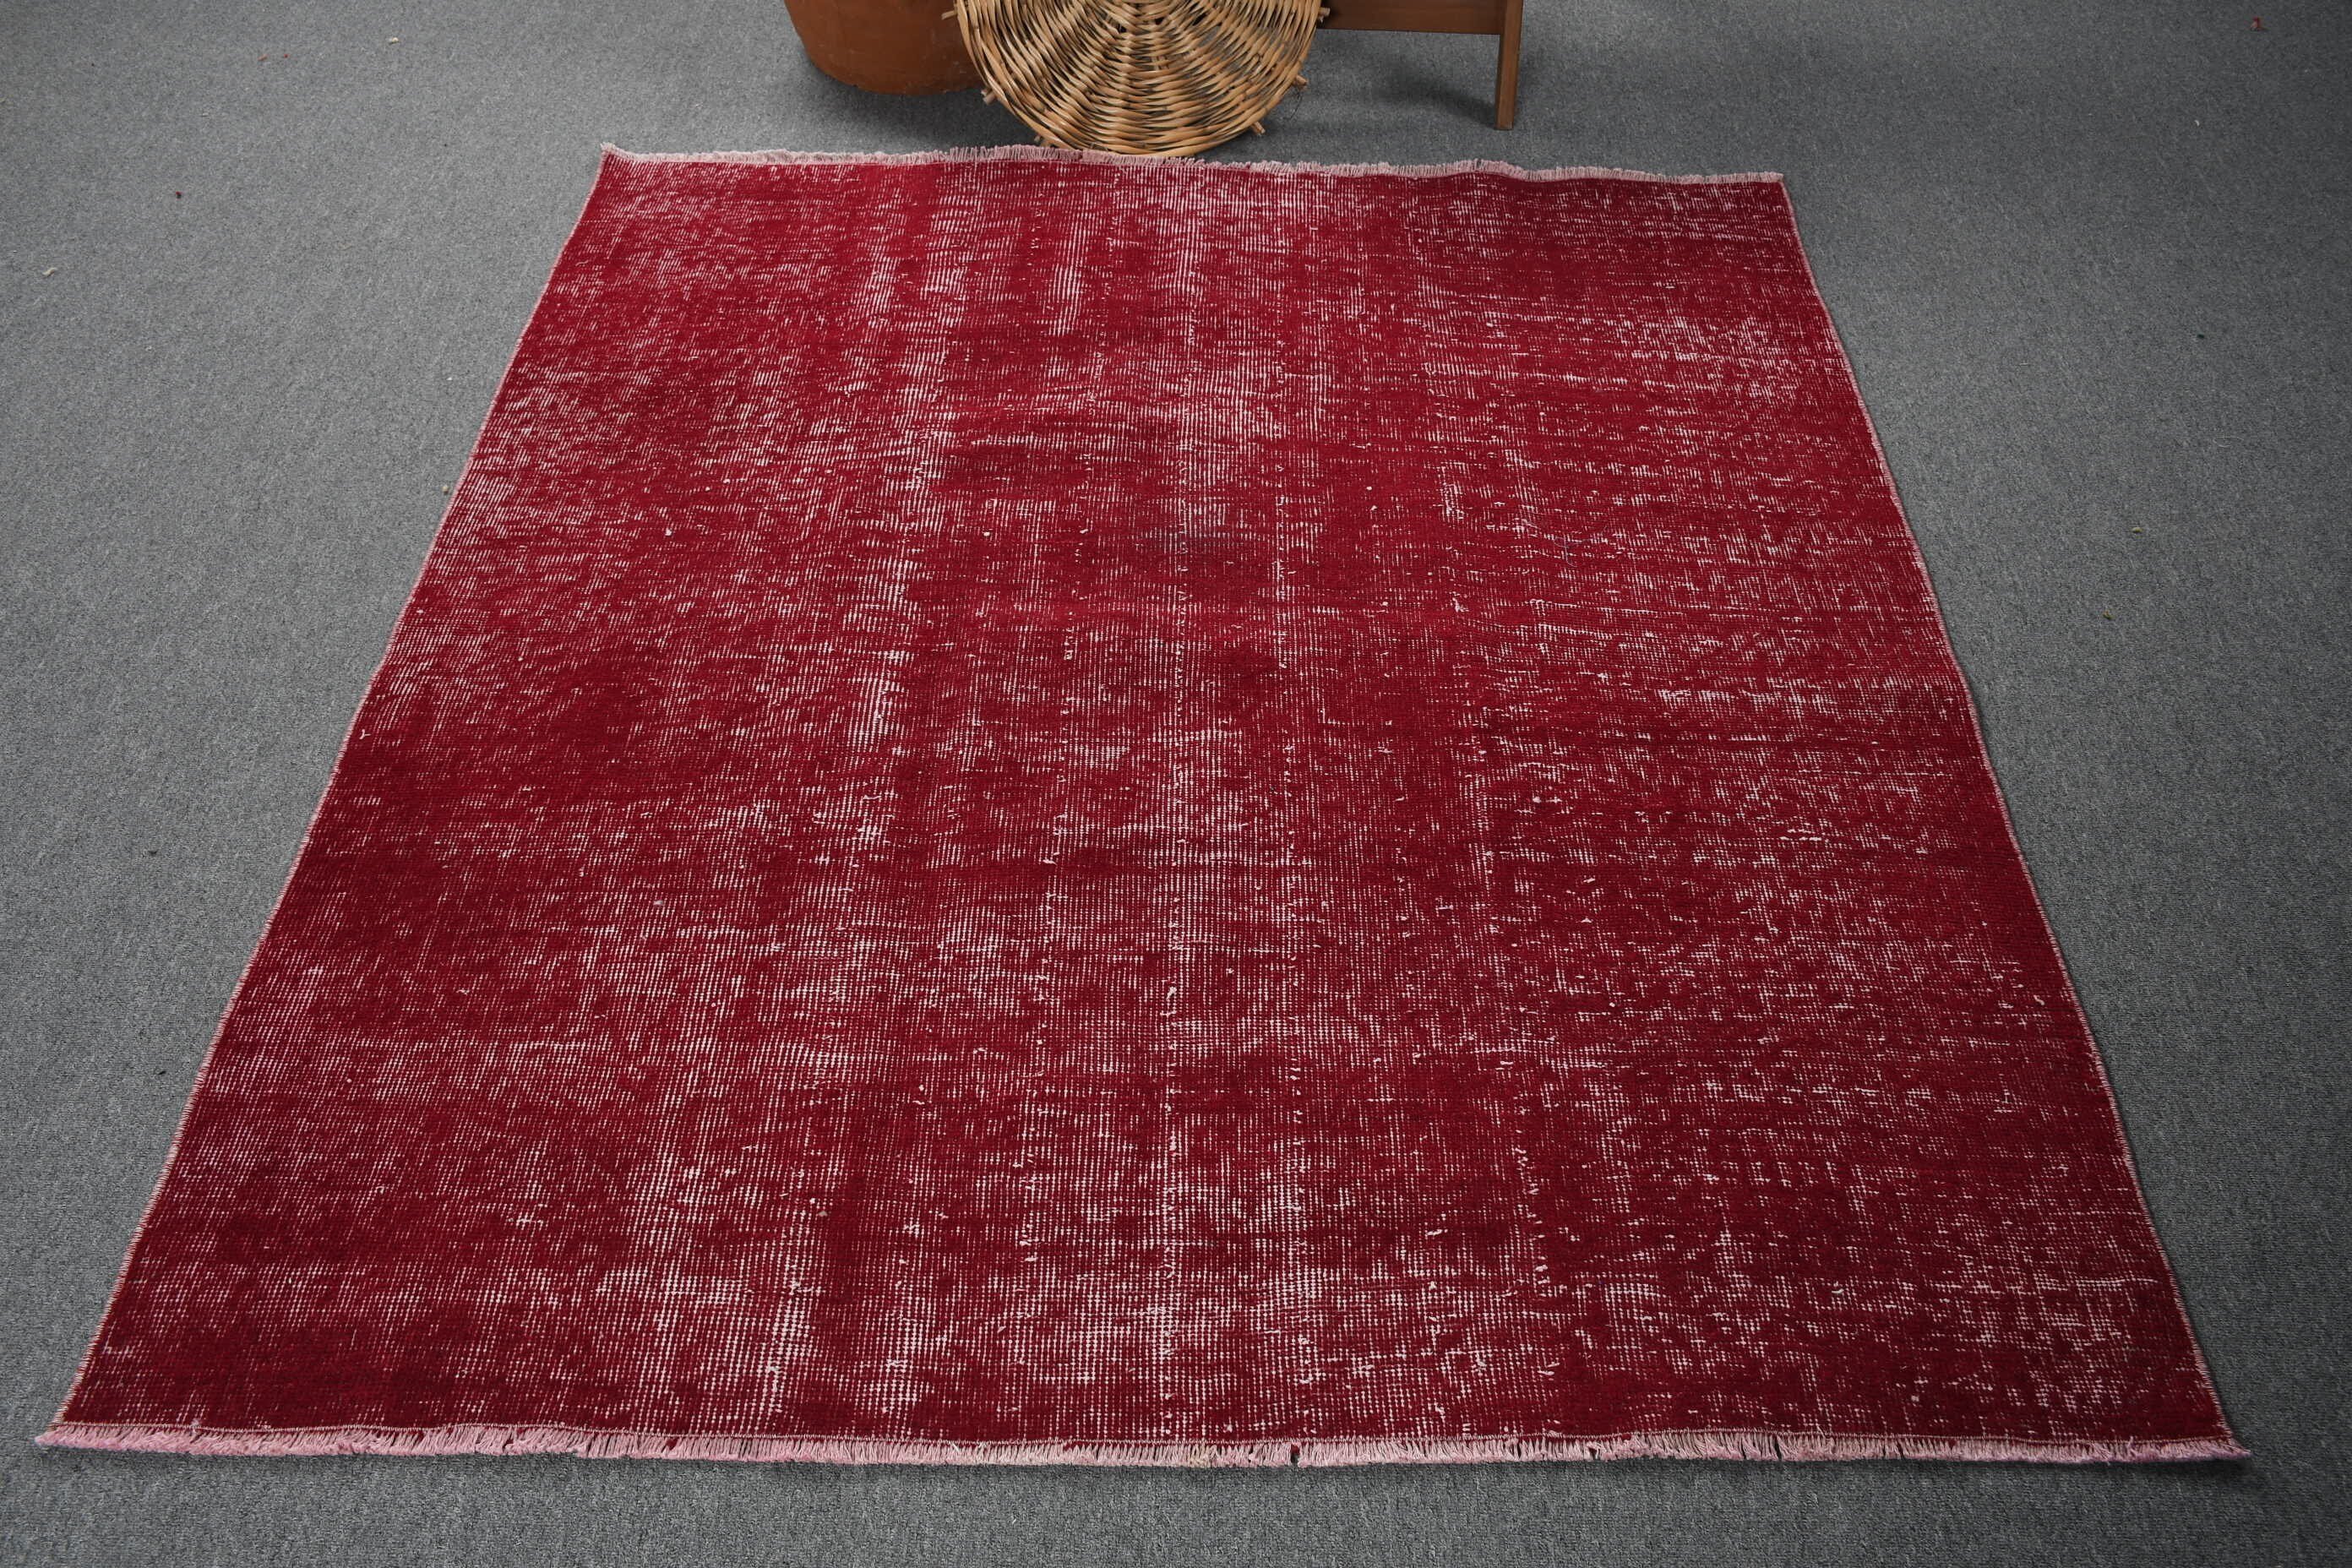 Vintage Rugs, Kitchen Rugs, Purple Floor Rugs, 4.9x5.5 ft Area Rugs, Turkish Rugs, Living Room Rugs, Wool Rugs, Rugs for Dining Room